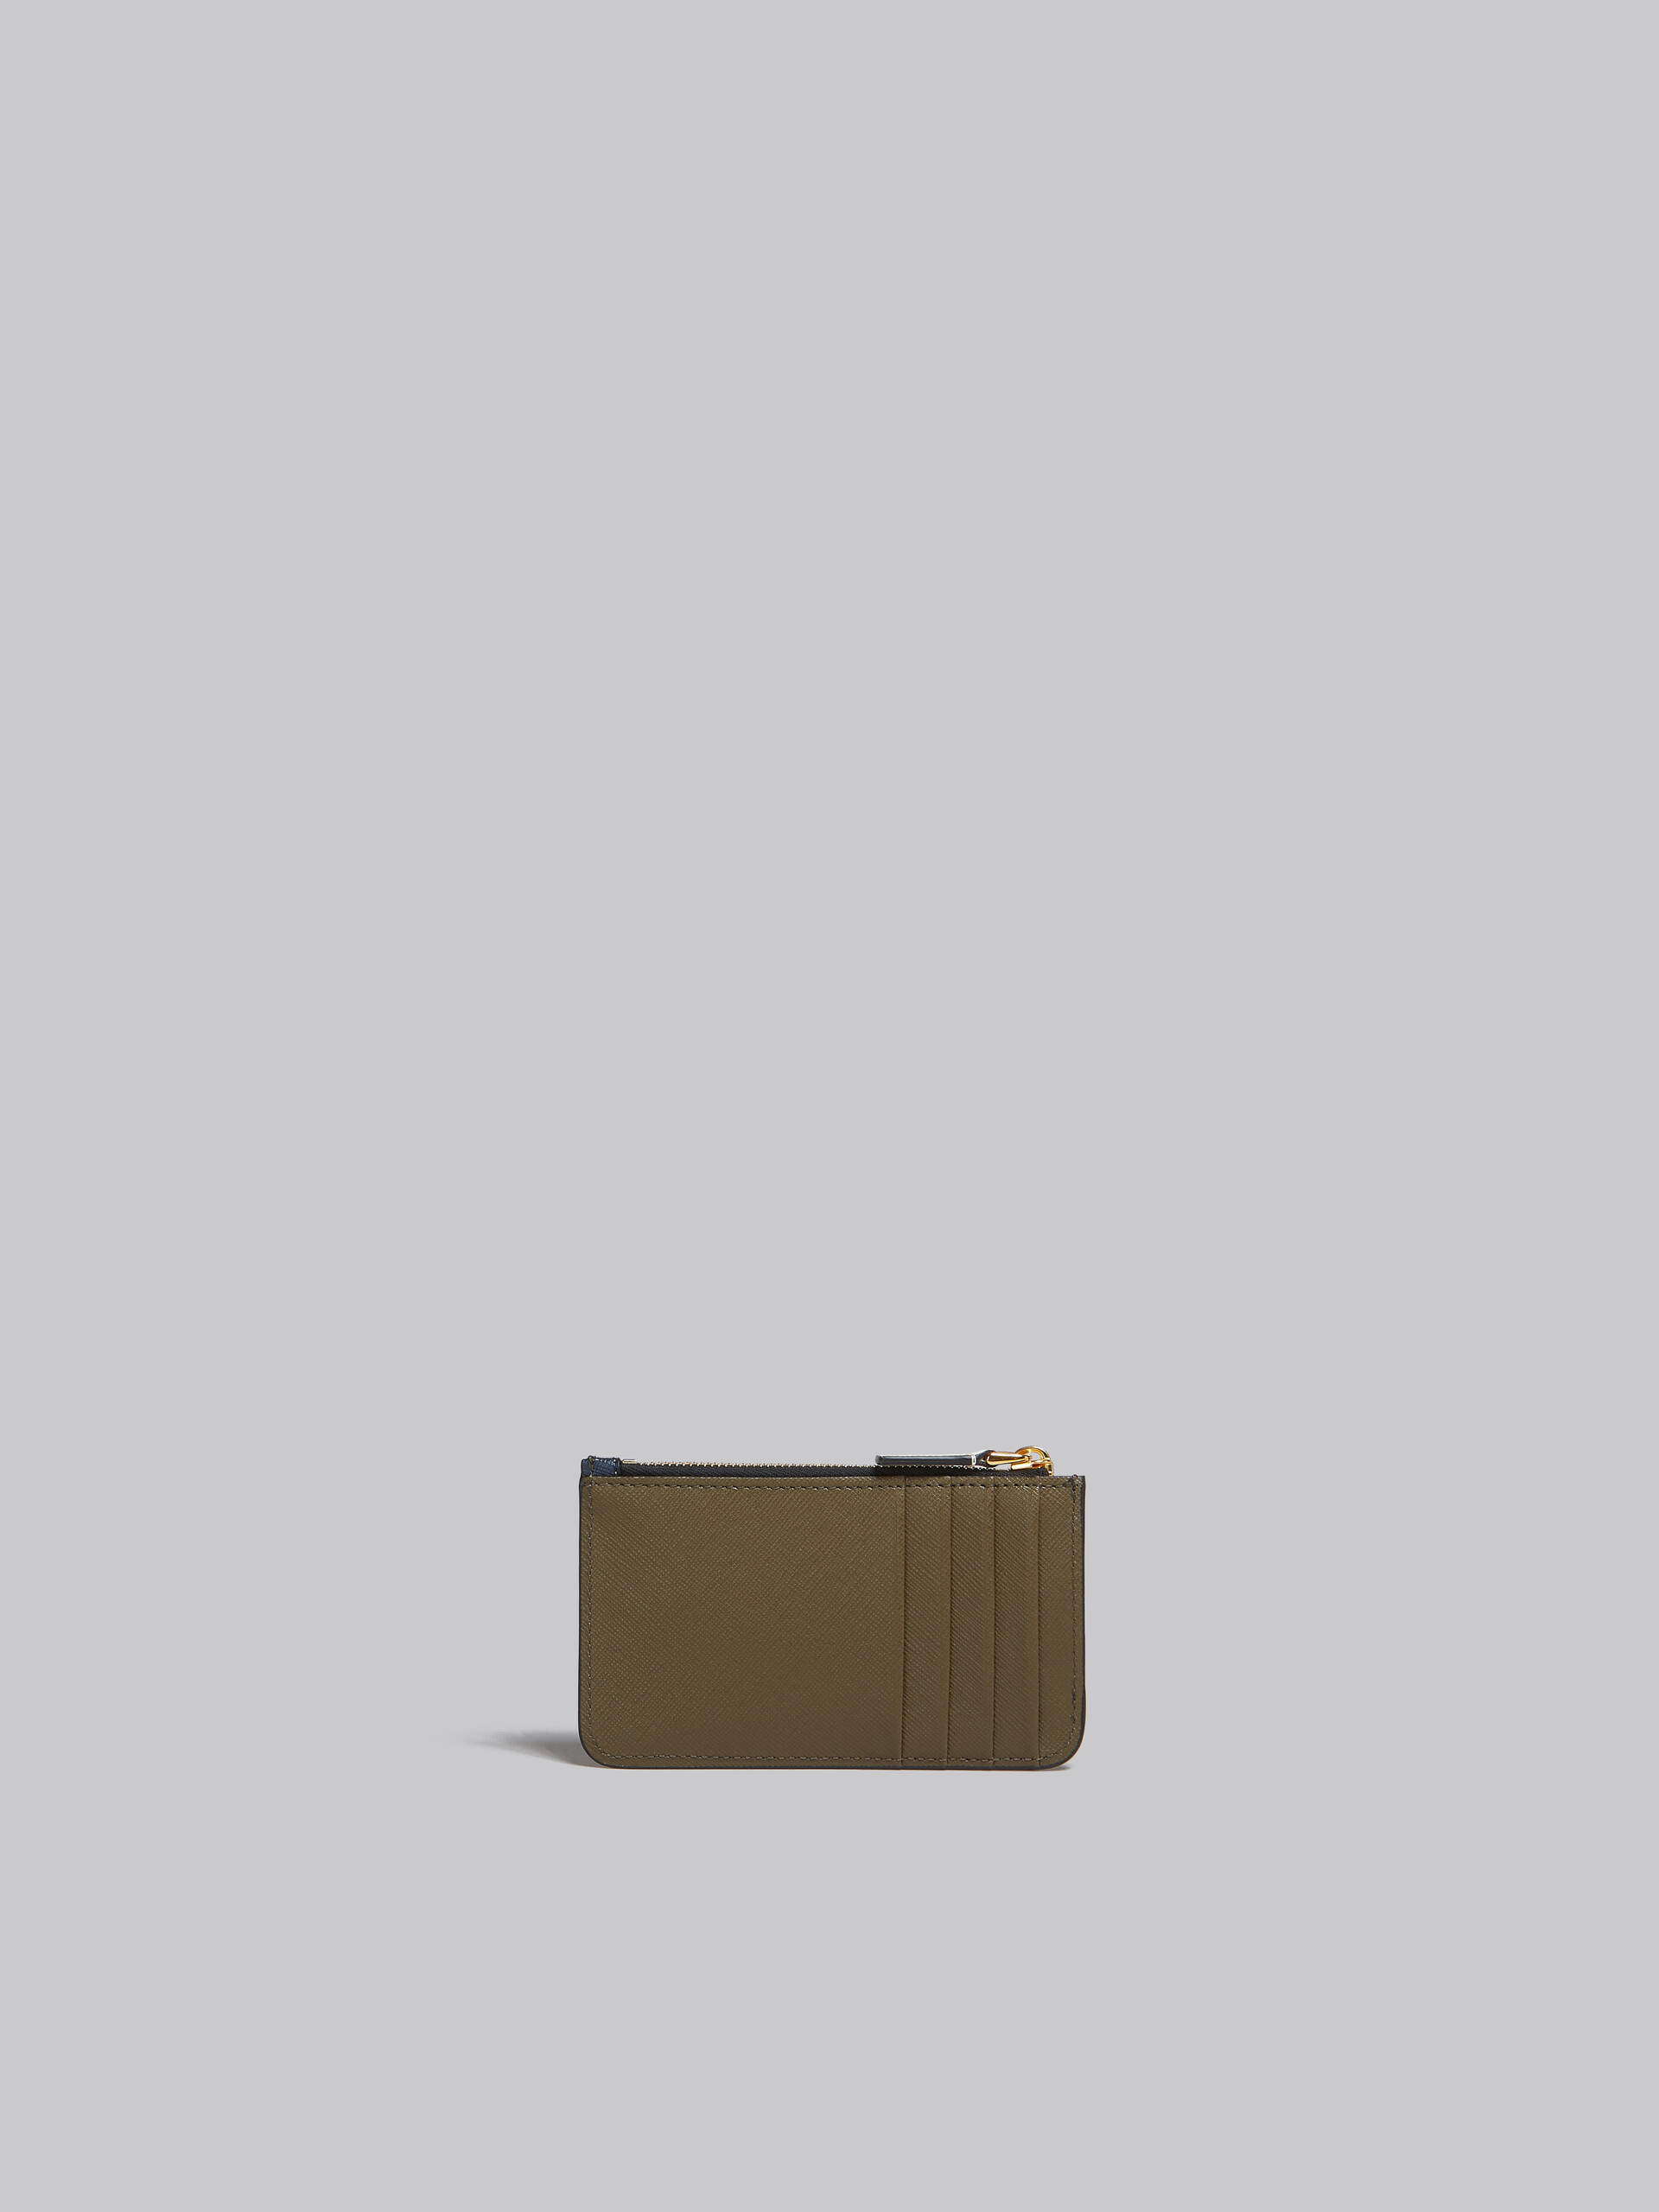 Porte-cartes en cuir saffiano vert clair, blanc et marron - Portefeuilles - Image 3